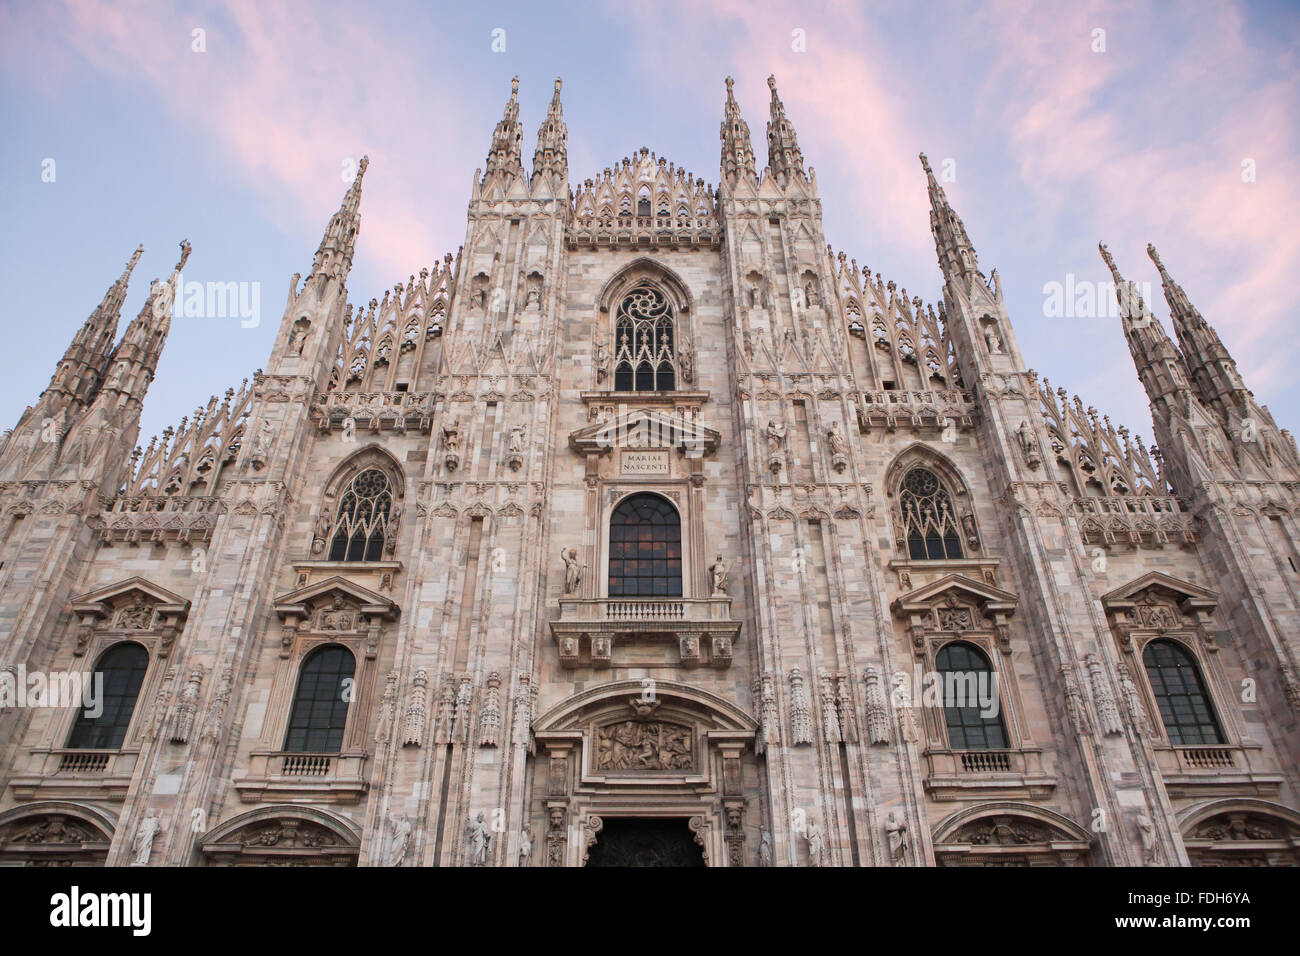 La Catedral de Milán (Duomo di Milano), en la Piazza del Duomo de Milán, Lombardía, Italia. Foto de stock